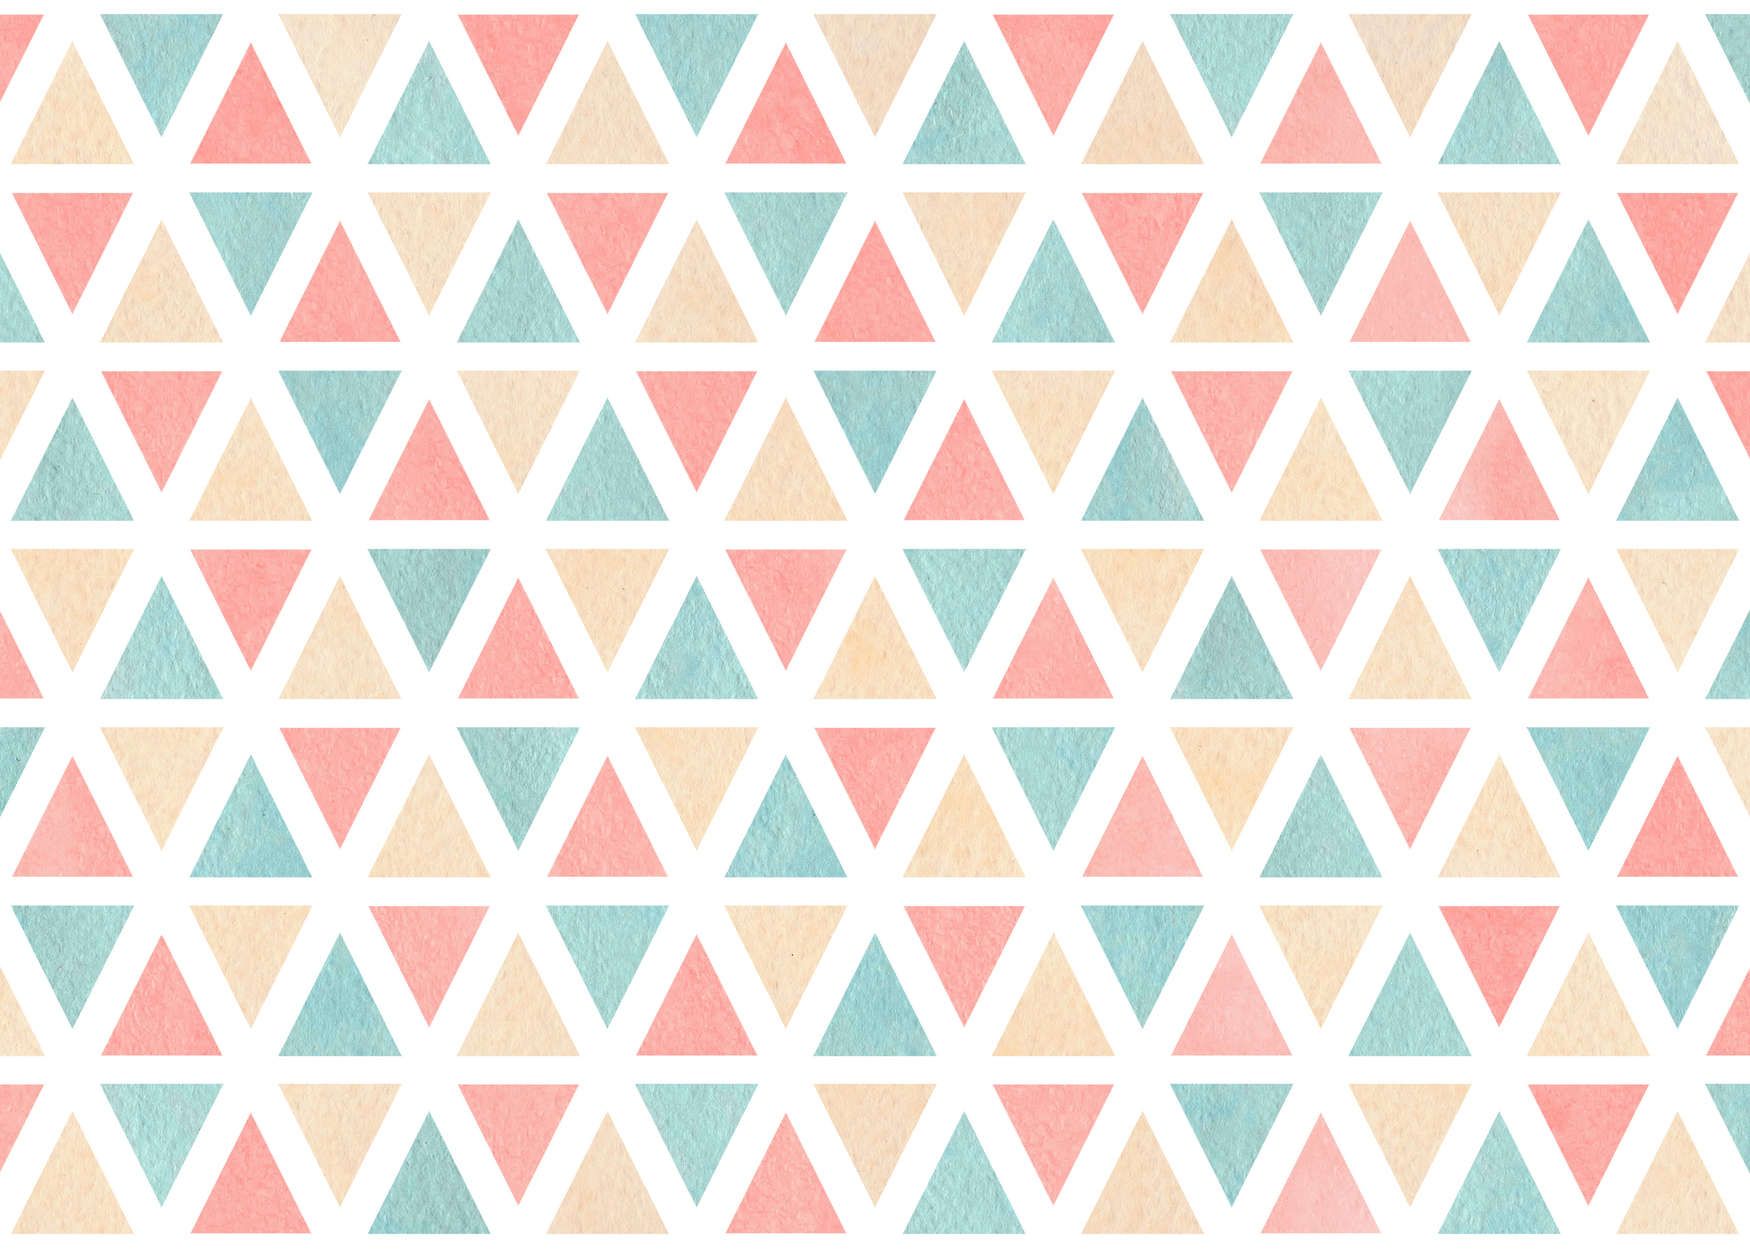             Digital behang grafisch patroon met kleurrijke driehoeken - Glad & mat vlies
        